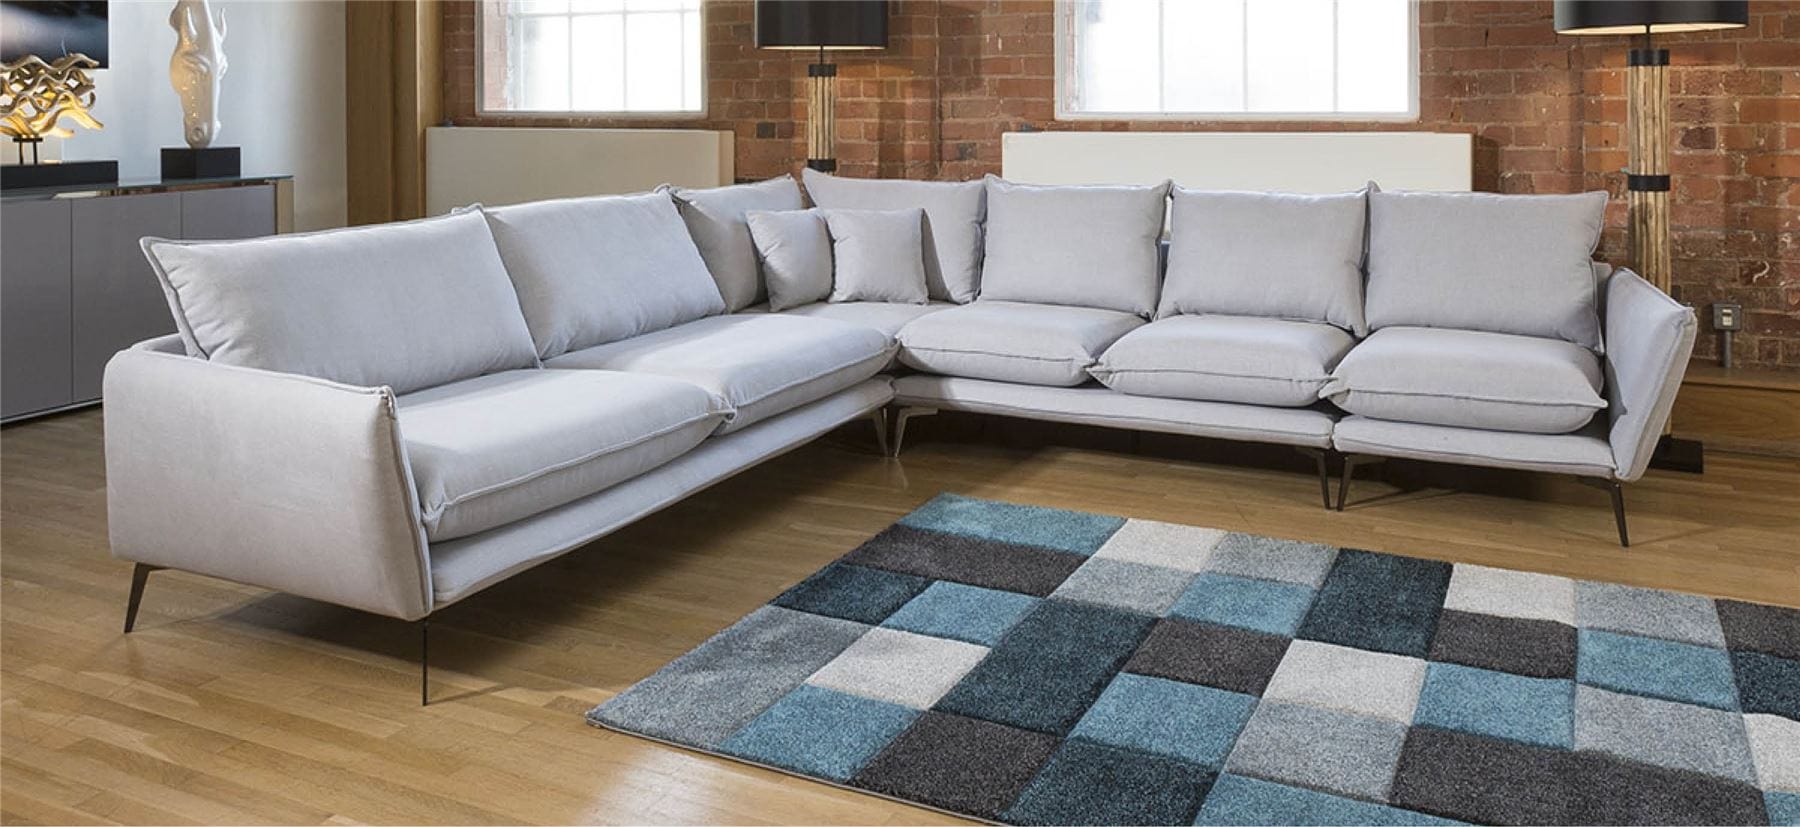 Quatropi Beautiful Rachel Large Corner Modular Sofa Many Fabrics 3.2 x 3.05m